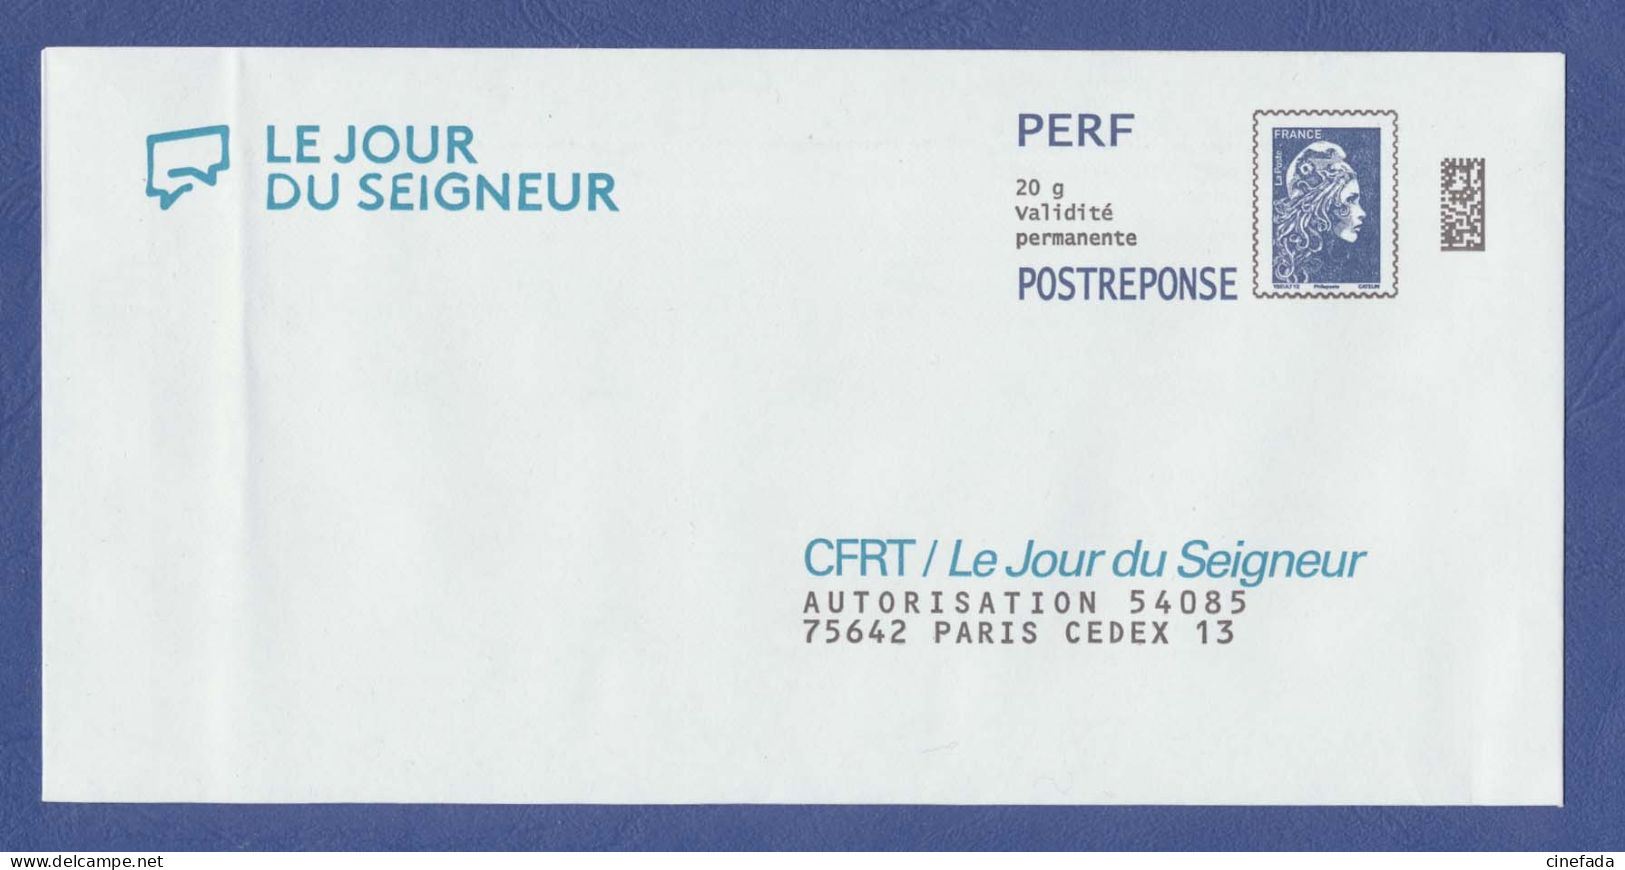 LE JOUR DU SEIGNEUR PERF Postréponse Neuf. Autorisation 54085, 20g Validité Permanente. Dos 421781. - PAP : Antwoord /Marianne L'Engagée